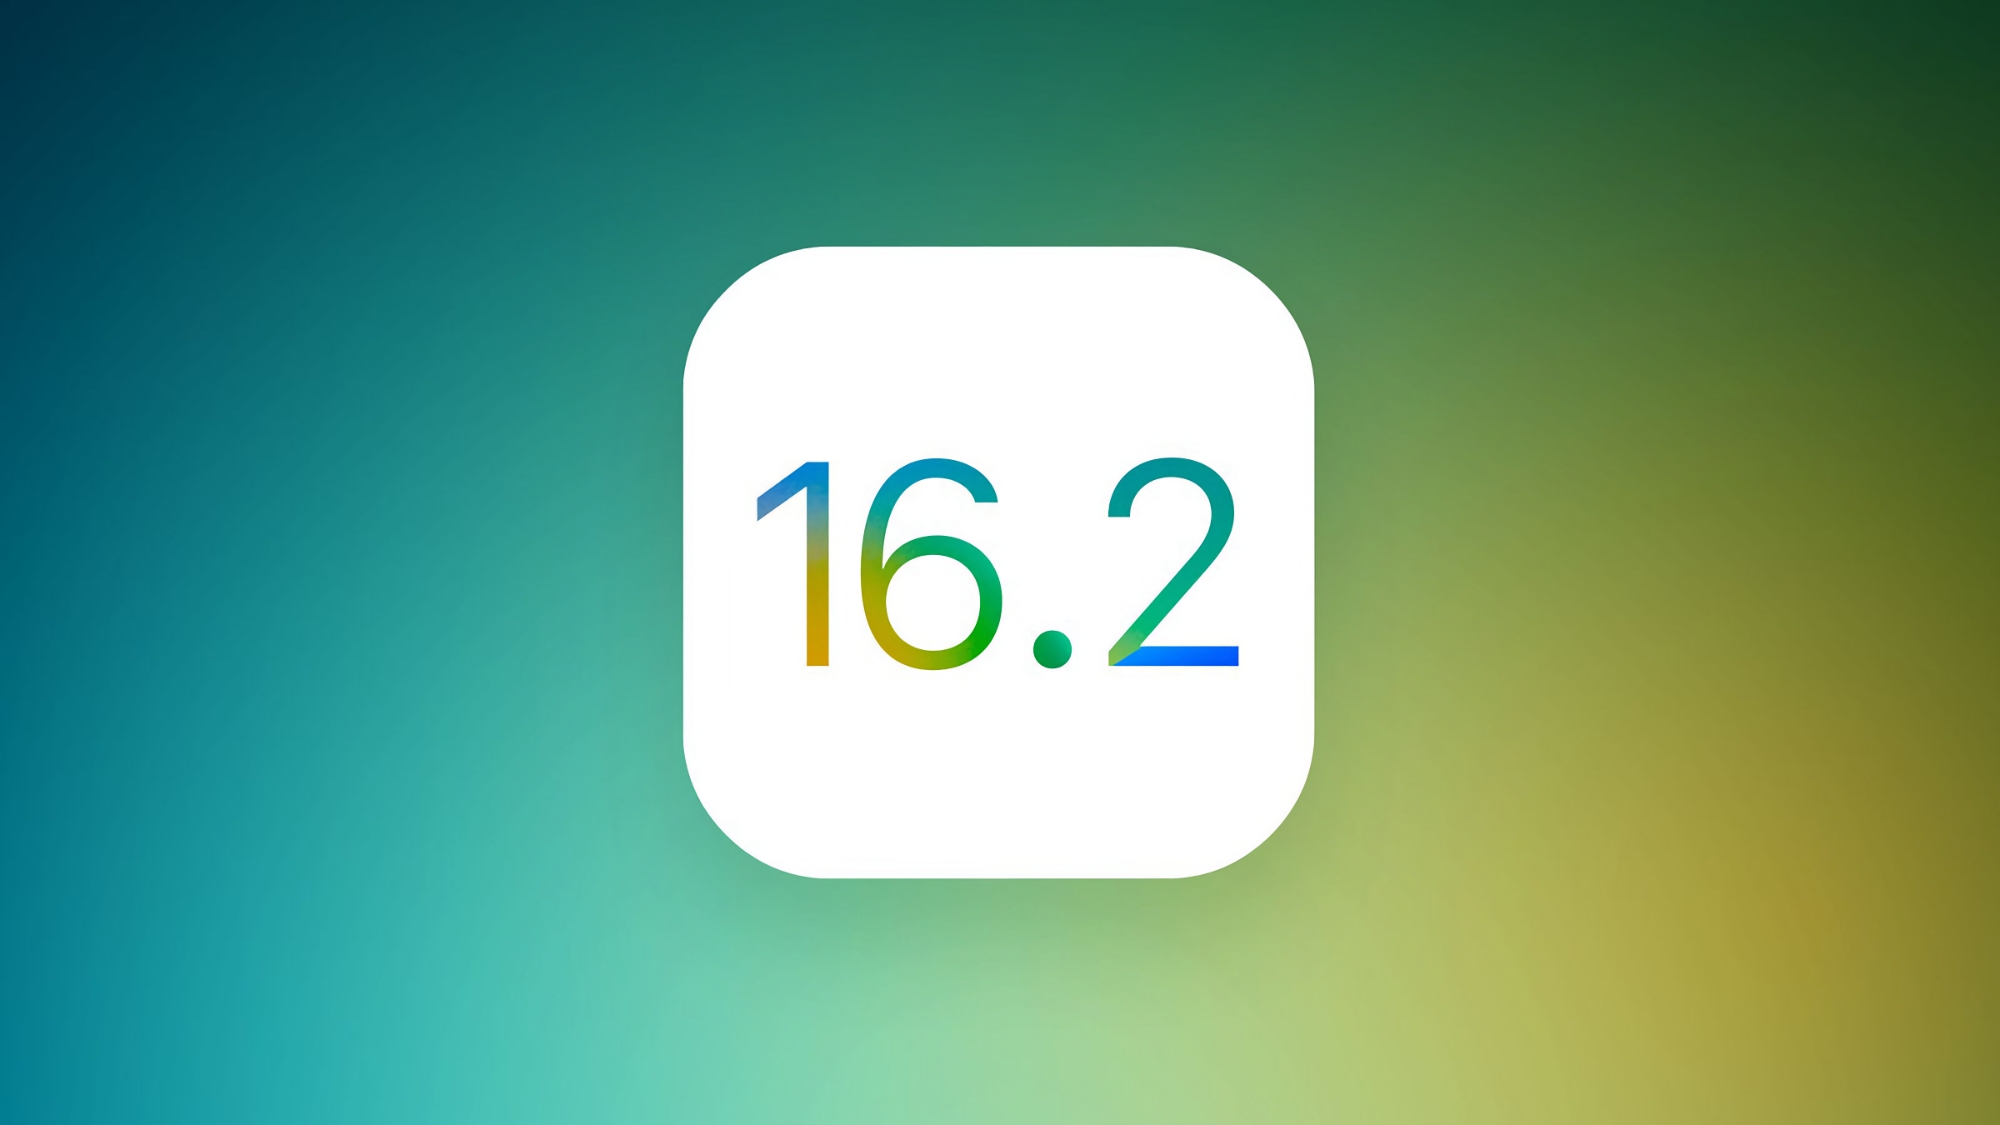 Apple veröffentlicht die vierte Beta-Version von iOS 16.2 und iPadOS 16.2: Was ist neu?